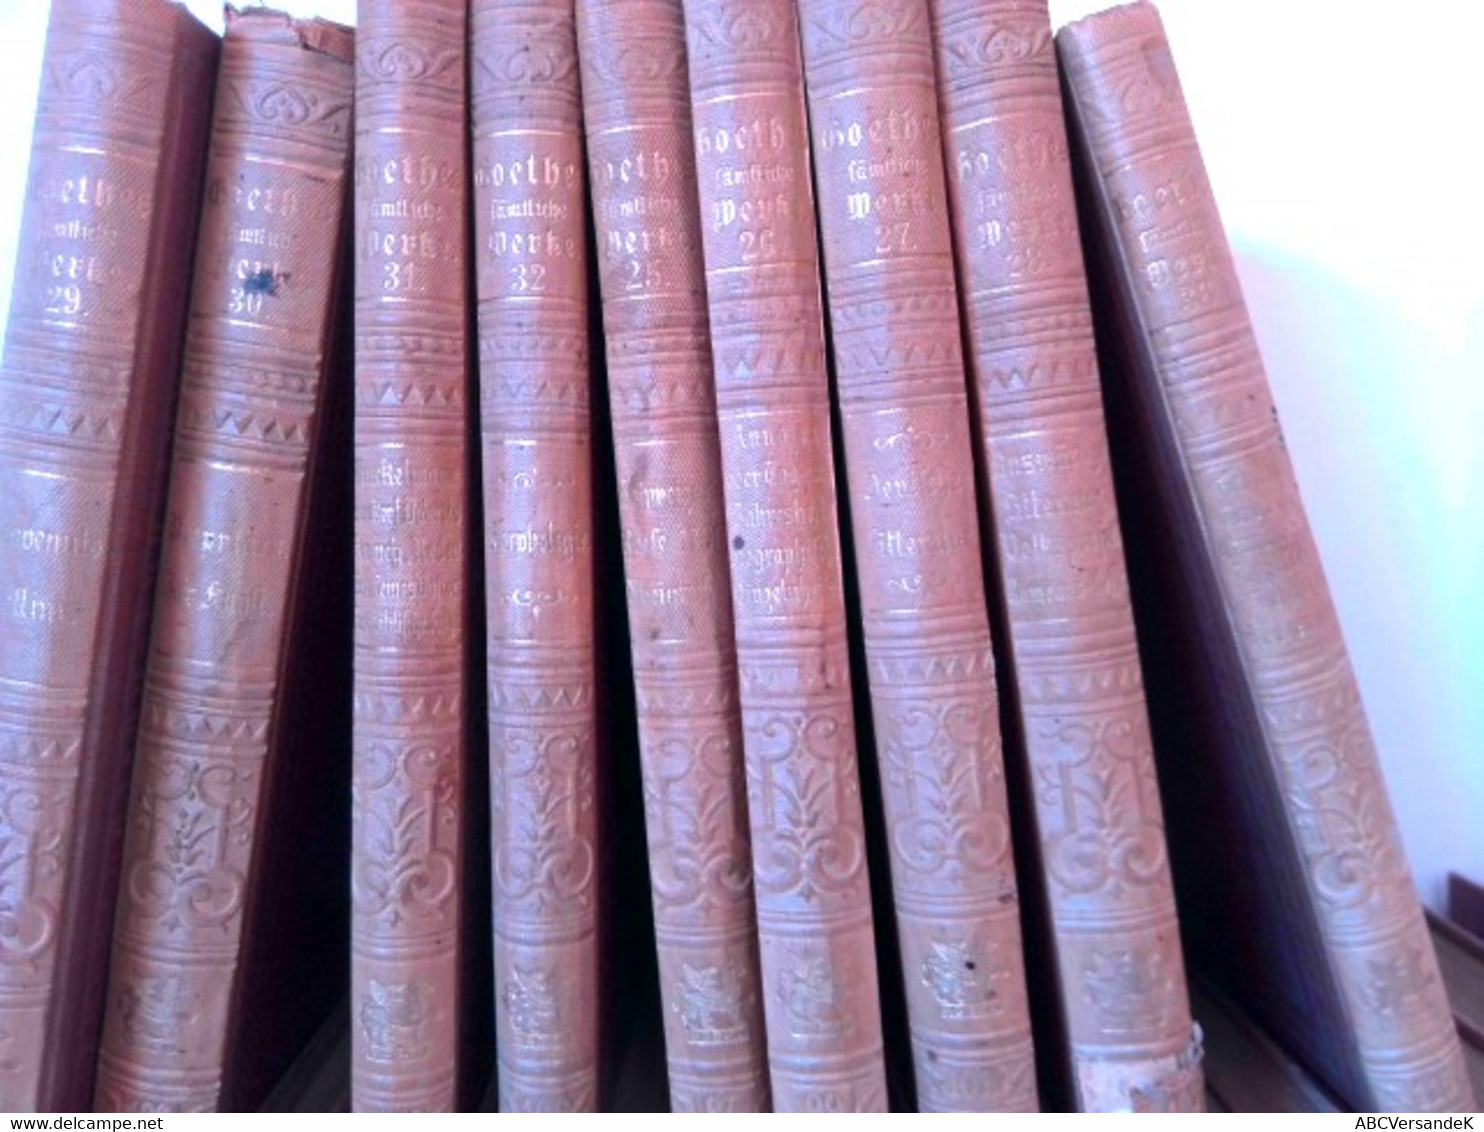 Konvolut Bestehend Aus 36 Bänden Zum Thema: Goethes Sämtliche Werke Aus Der  Cottasche Bibliothek Der Weltlite - Duitse Auteurs